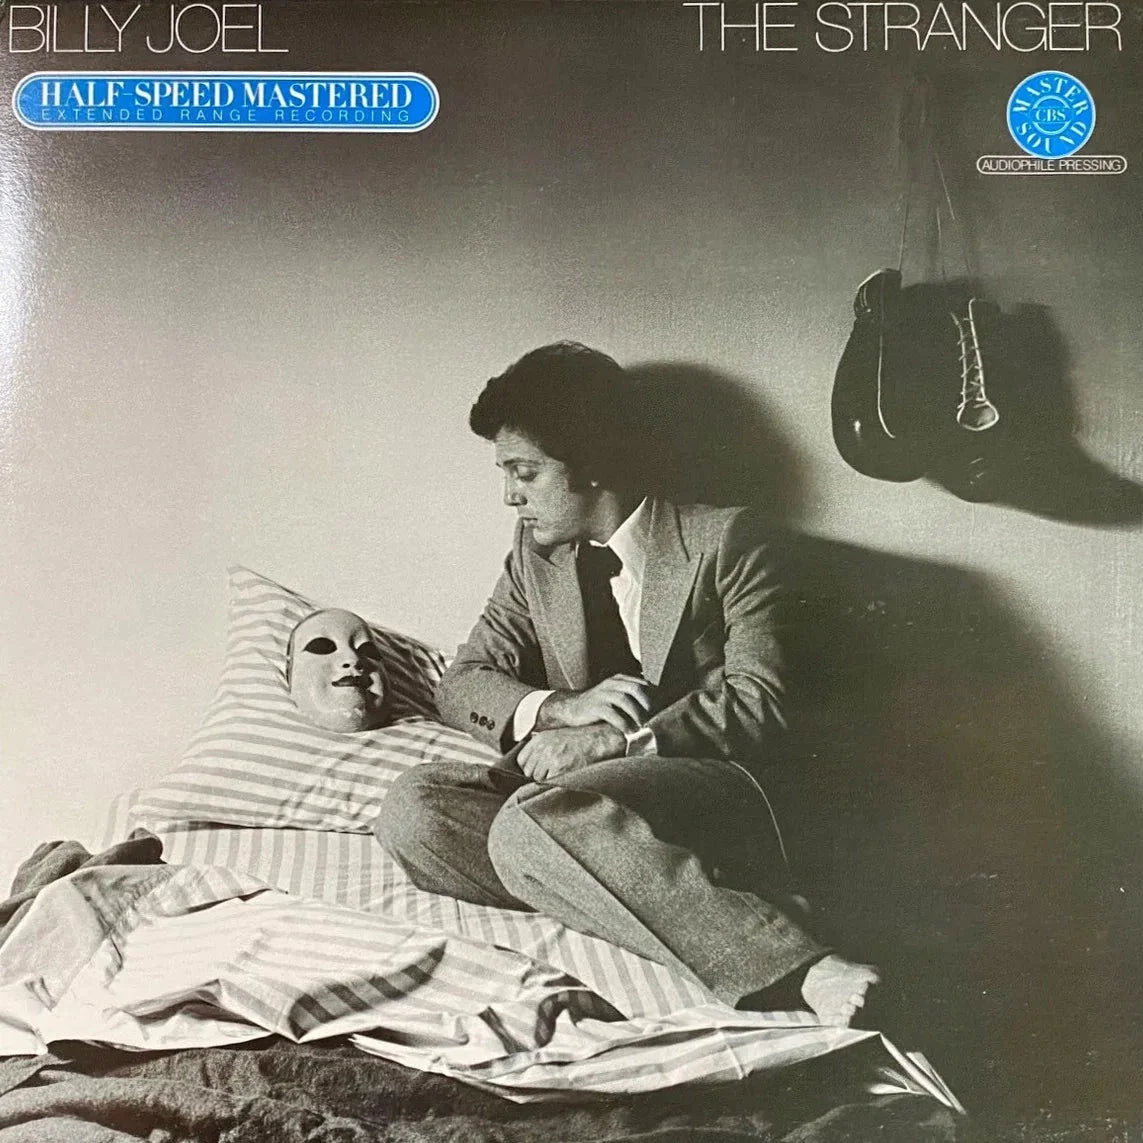 Billy Joel - The Stranger Vinyl